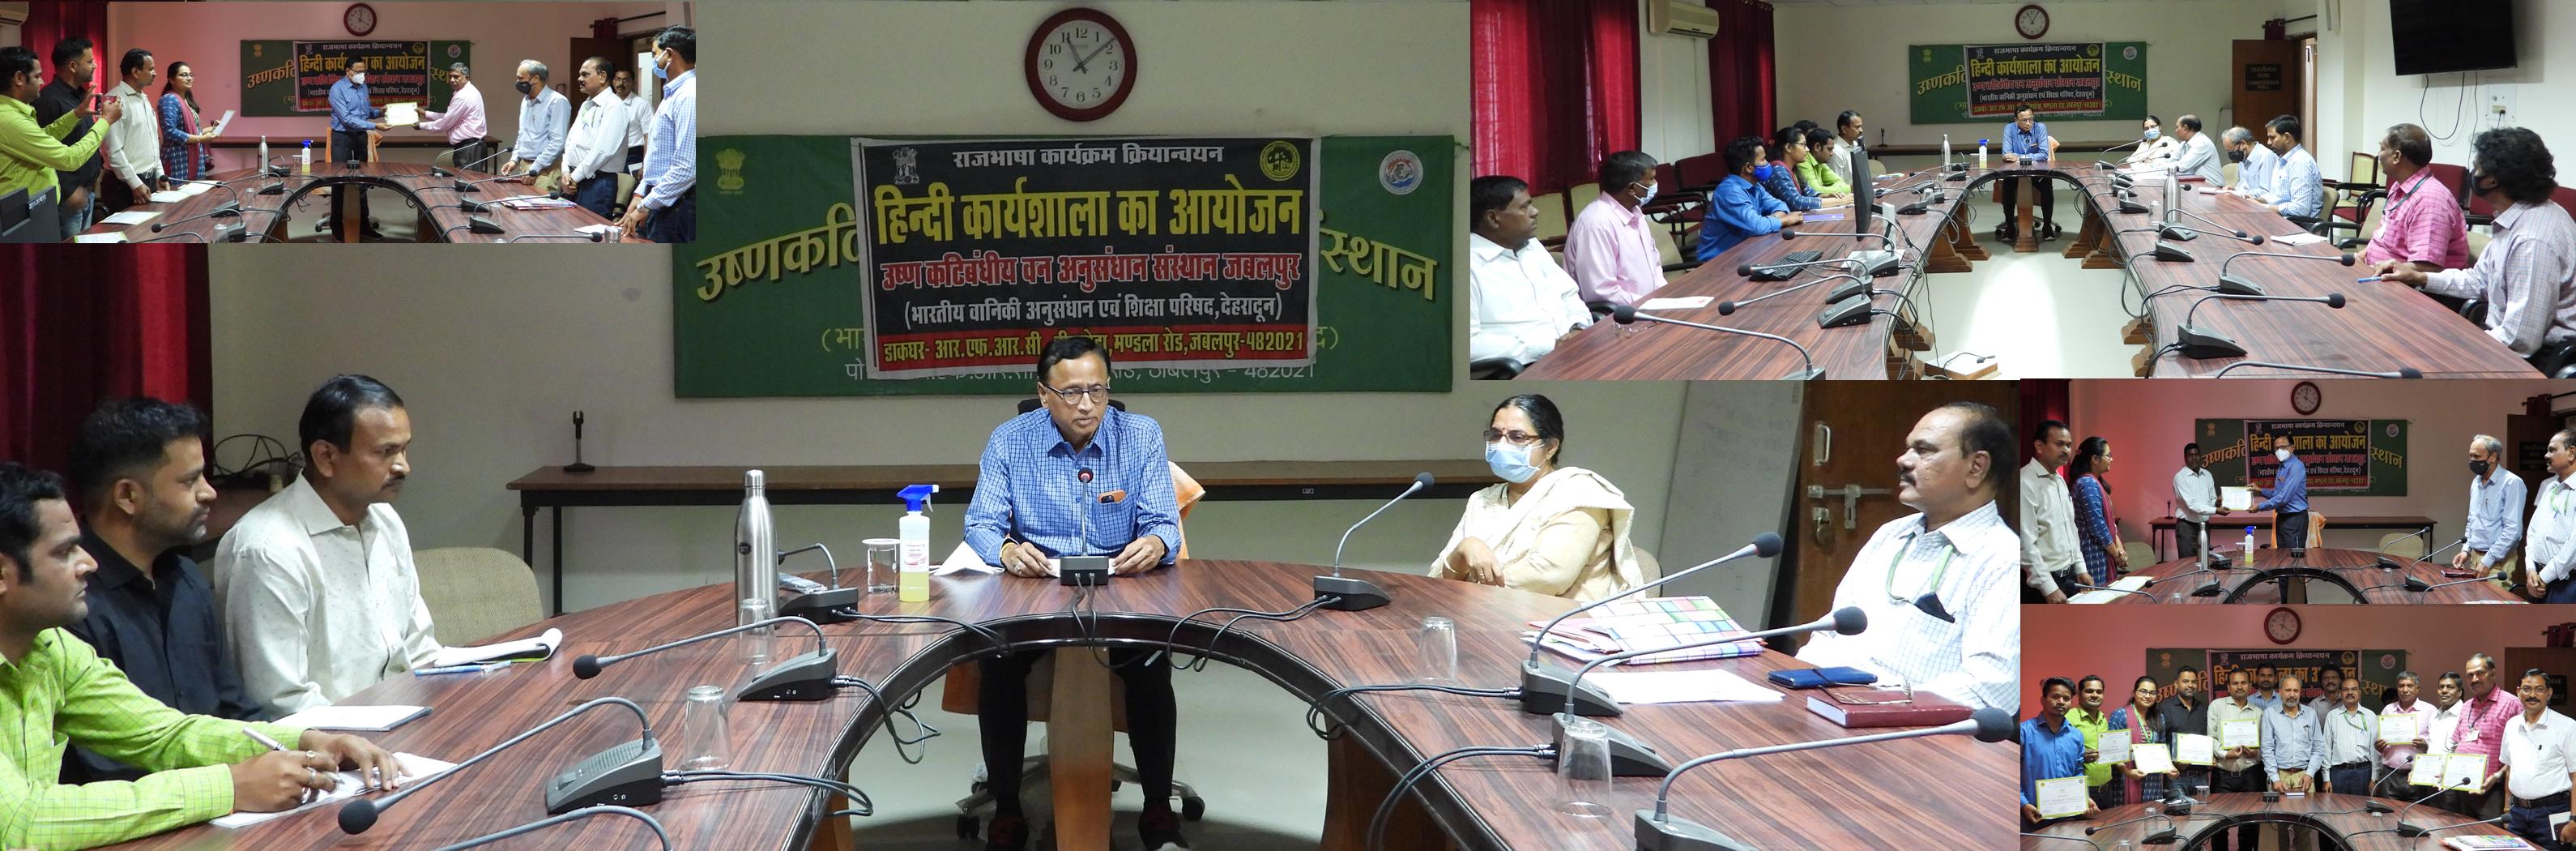 उष्णकटिबंधीय वन अनुसंधान संस्थान (उ.व.अ.सं.), जबलपुर में एक दिवसीय हिन्दी कार्यशाला का आयोजन (15/03/2022)